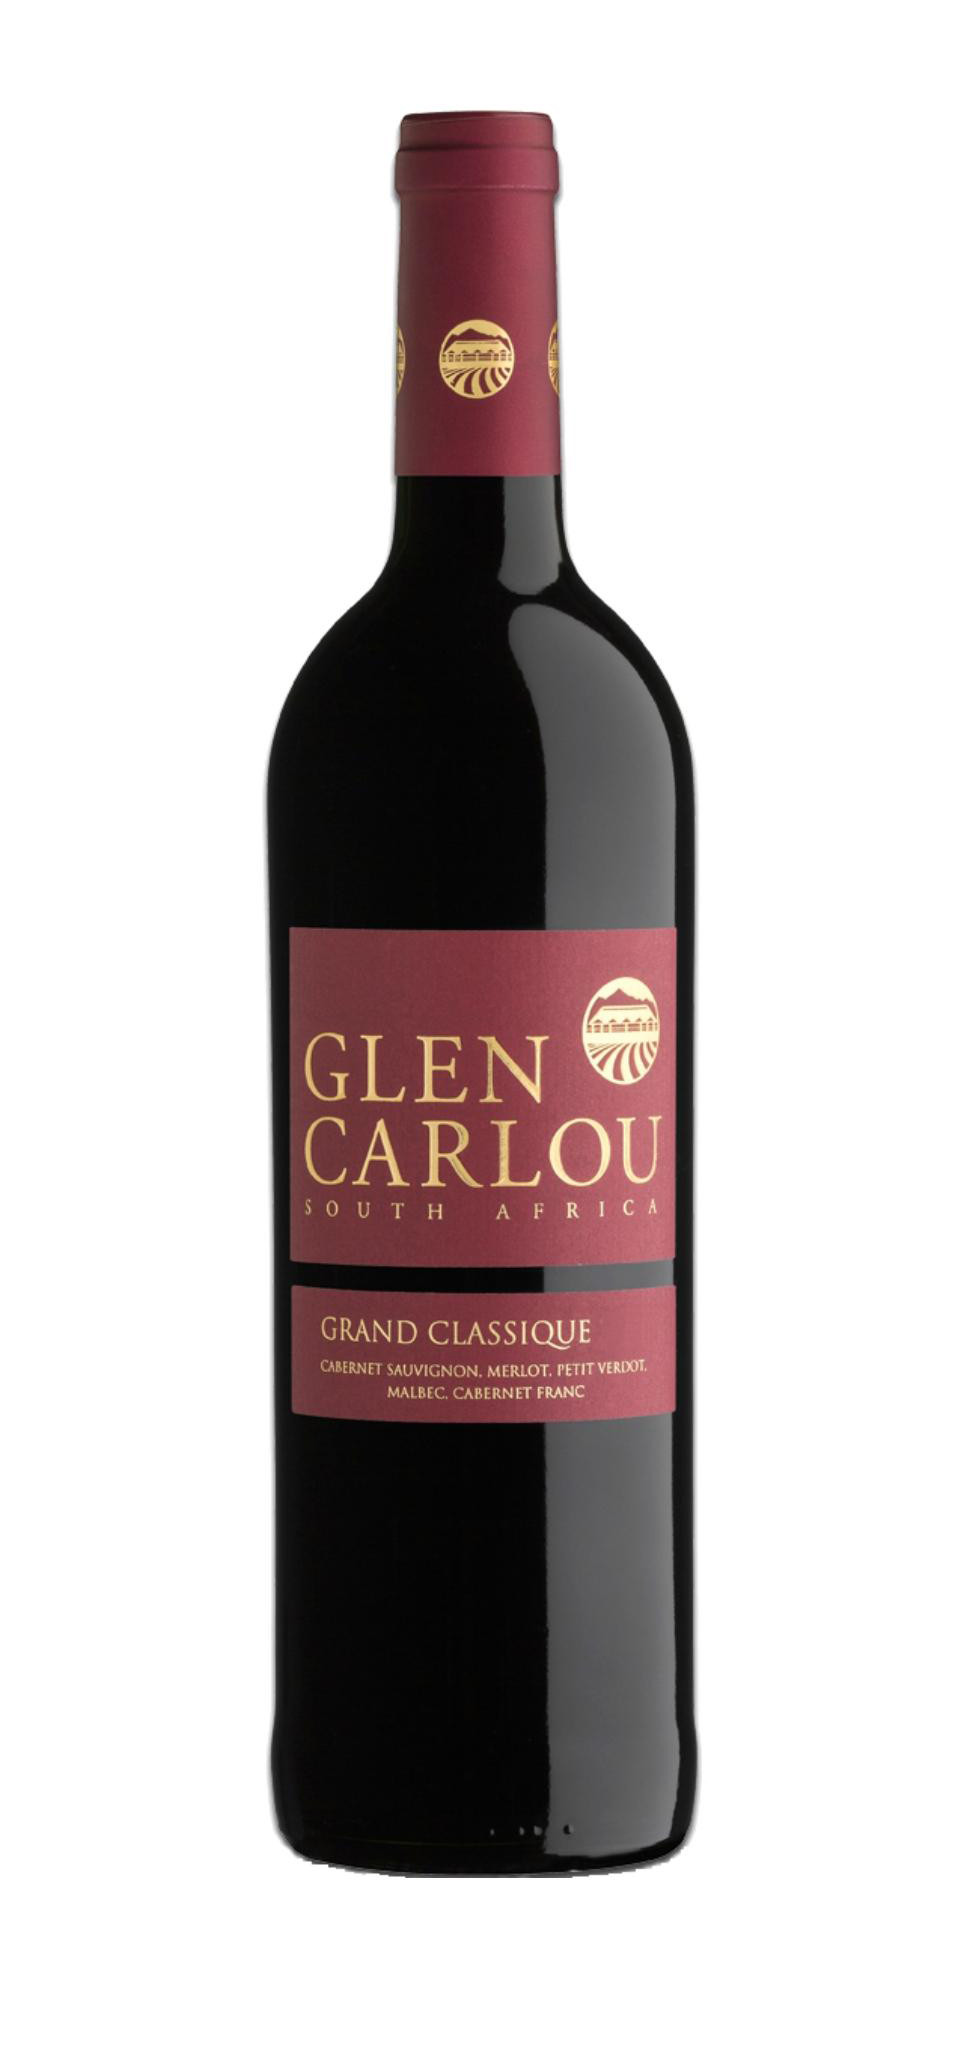 Grand Classique Cabernet Sauvignon Glen Carlou 2015